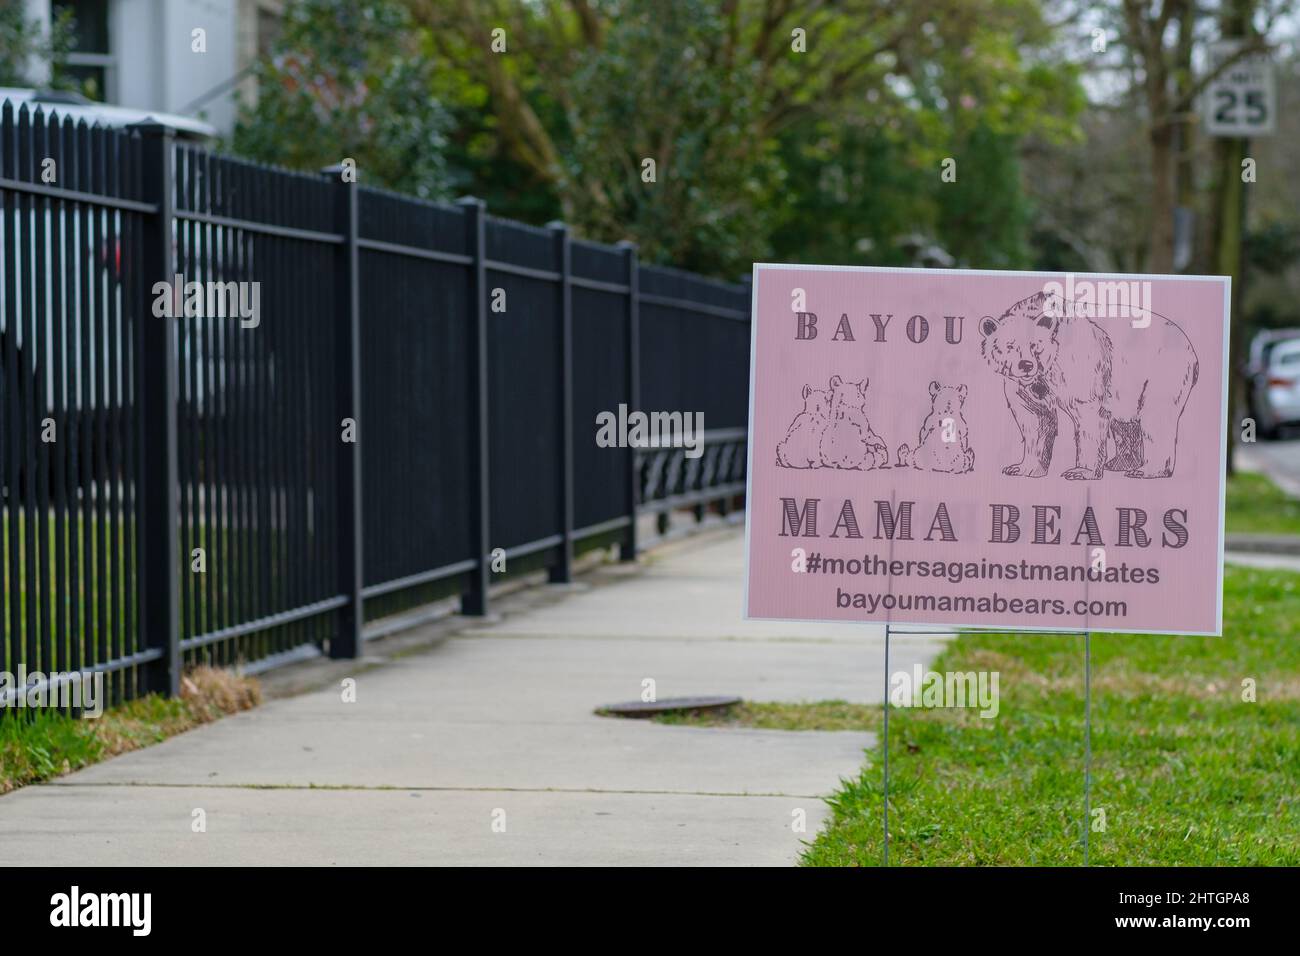 NUEVA ORLEANS, LA, EE.UU. - 27 DE FEBRERO de 2022: Signo 'Bayou Mama Bears' a lo largo de la acera en la casa Uptown para madres que se oponen a los mandatos de vacunación Foto de stock